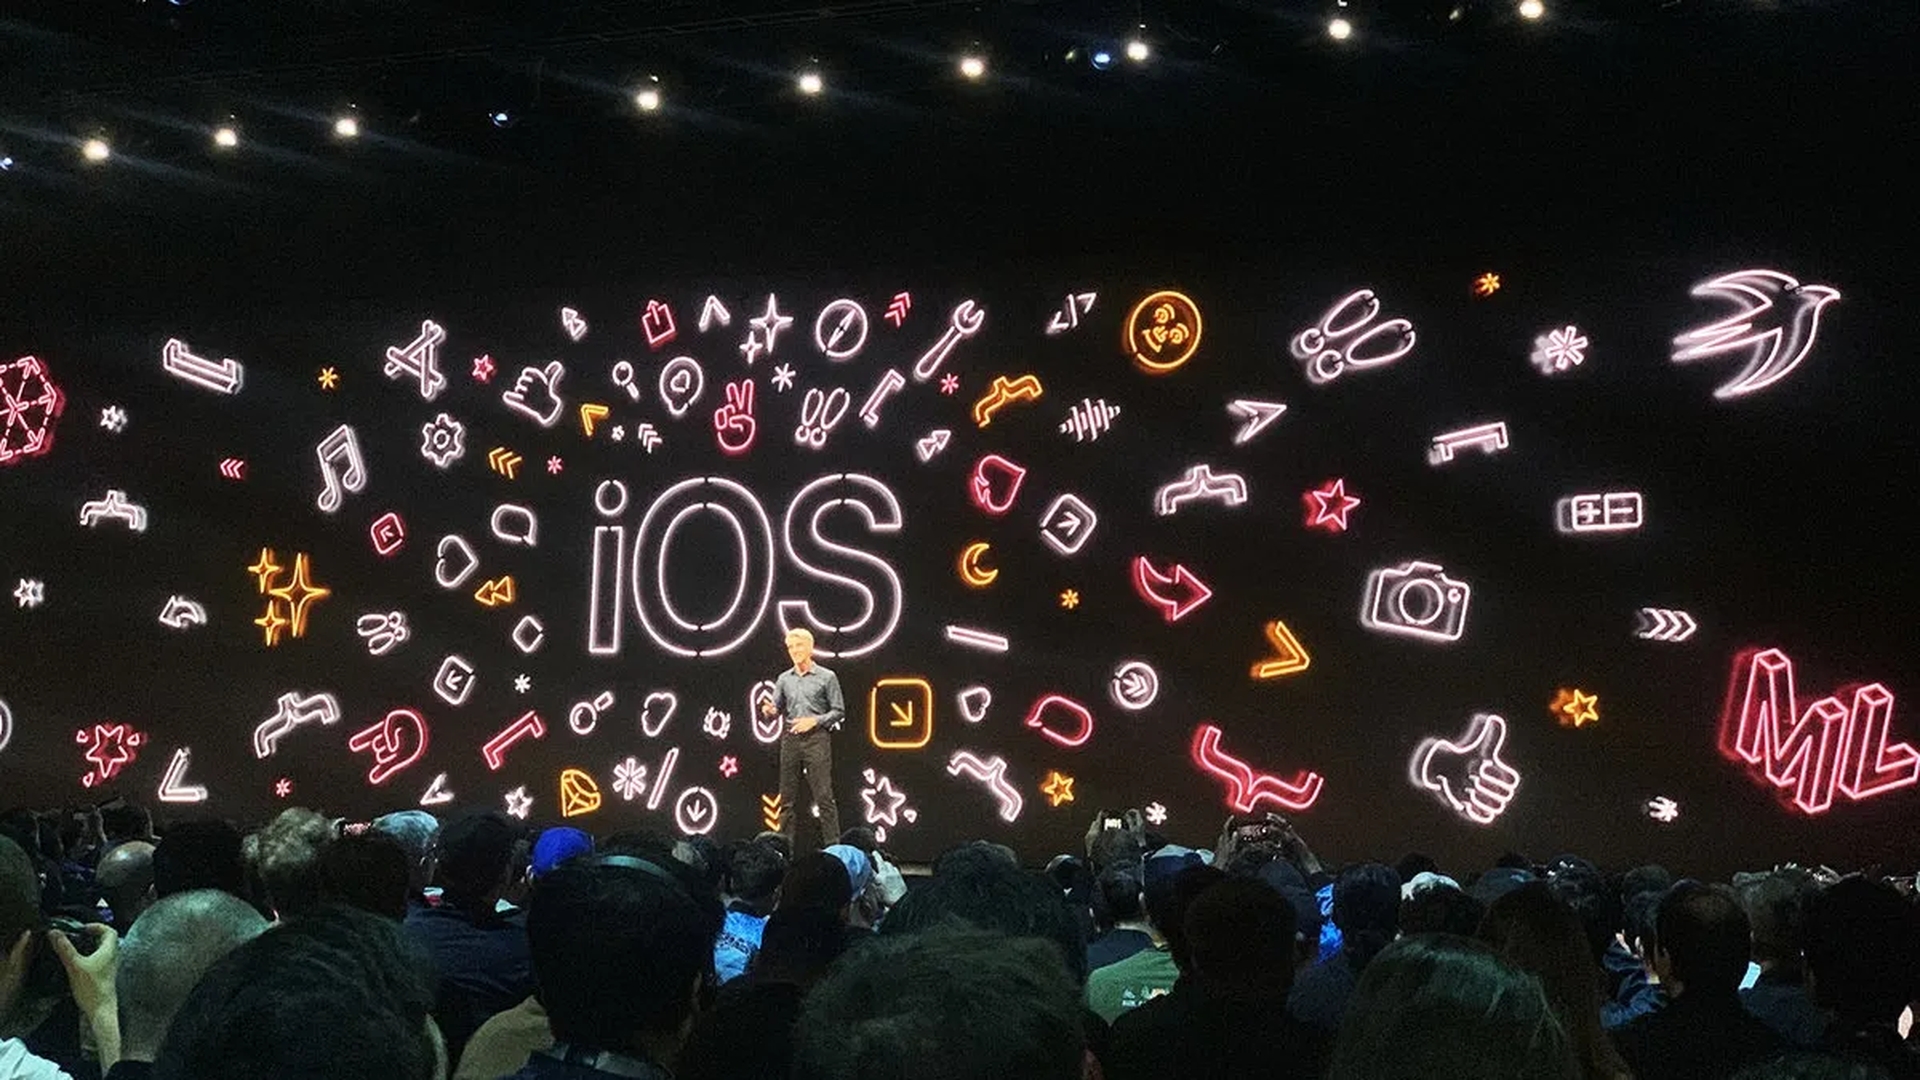 Heute werden wir darüber berichten, wann die Keynote der WWDC 2022 ist und wie man sie sich ansieht, damit Sie das jährliche Ereignis nicht verpassen, bei dem Apple neue Funktionen für seine Geräte vorstellt.